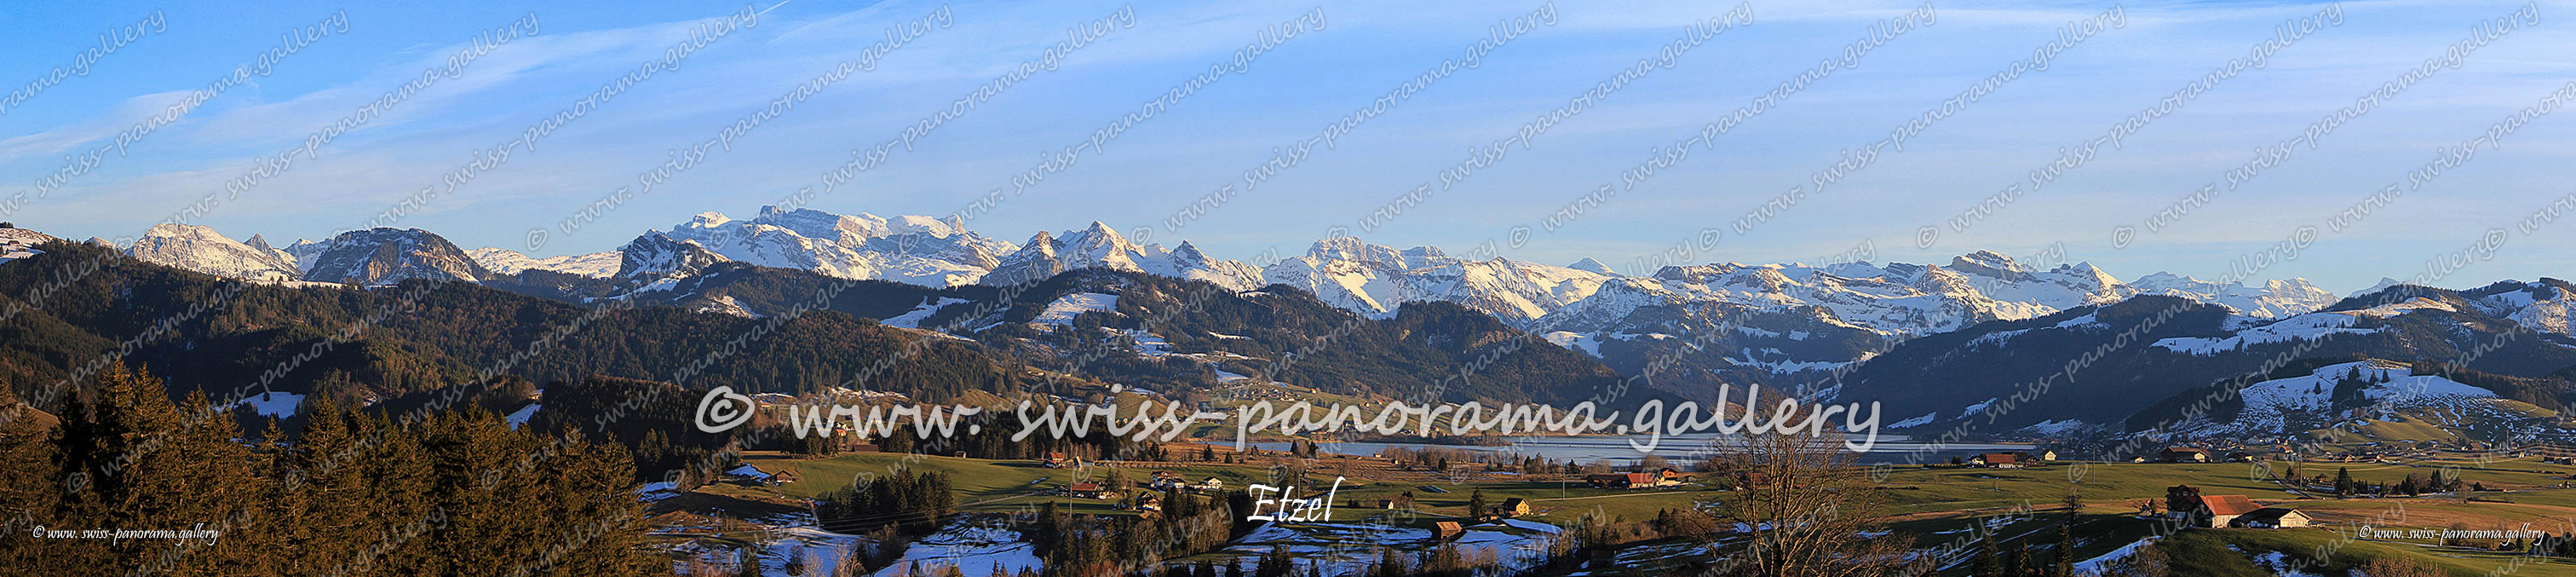 Swiss mountain panorama, Swiss-panorama.gallery, Panorama Etzel,  Kanton Schwyz, Schweizer Alpen Panorama, 
Kleiner Mythen 1'811 m (15 km), Grosser Mythen 1'899 m (16 km), Sichelhorn 2'767 m (46 km), Äbneter Stöckli 2'087 m (28 km), Spilauerstock 2'270 m (28 km), Hundstock 2'213 m (28 km), Diepen 2'222 m (28 km), Diepen 2'222 m (28 km), Chronenstock 2'451 m (26 km), Chaiserstock 2'515 m (27 km), Amselspitz 1'491 m (9 km), Gross Ruchen, Bögliegg 1'574 m (9 km), Gross Schärhorn 3'294 m (38 km), Gross Sternen 1'969 m (19 km), Chammliberg 3'215 m (37 km), Clariden 3'267 m (37 km), Tödi 3612m,  Forstberg 2'215 m (19 km), Mieserenstock 2'199 m (20 km), Höch Hund 2'215 m (19 km), Fidisberg 1'916 m (16 km), Biet 1'965 m (18 km), Twäriberg 2'117 m, Druesberg, Silberen  Twärenen 2'319 m (22 km), Pfannenstock 2'573 m (26 km), Fläschenspitz 2'073 m (18 km), Firsten 1'944 m (16 km), Grisset 2'721 m (27 km), Gantspitz 1'970 m (17 km), Bös Fulen, Fluebrig 2093m, Diethelm 2'093 m (15 km), Glärnisch 2'909 m (26 km), Bächistock 2'914 m (26 km), Ruchen 2'901 m (25 km), Chli Aubrig 1'642 m (10 km), Vrenelisgärtli 2'903 m (26 km), Lachenstock 2'027 m (19 km), Grosser Aubrig 1'695 m (11 km), Gumenstock 2'256 m (22 km), Rautispitz 2'283 m (23 km), Schiberg 2'043 m (17 km), Rossalpelispitz 2'075 m (18 km), Mattstock 1'936 m (29 km), Federspitz 1'865 m (25 km), Speermürli 1'746 m (29 km), Speer1'950 m (28 km), Säntis, Altmann 2'435 m (47 km), Wildhuser Schafberg 2'373 m (46 km) 
